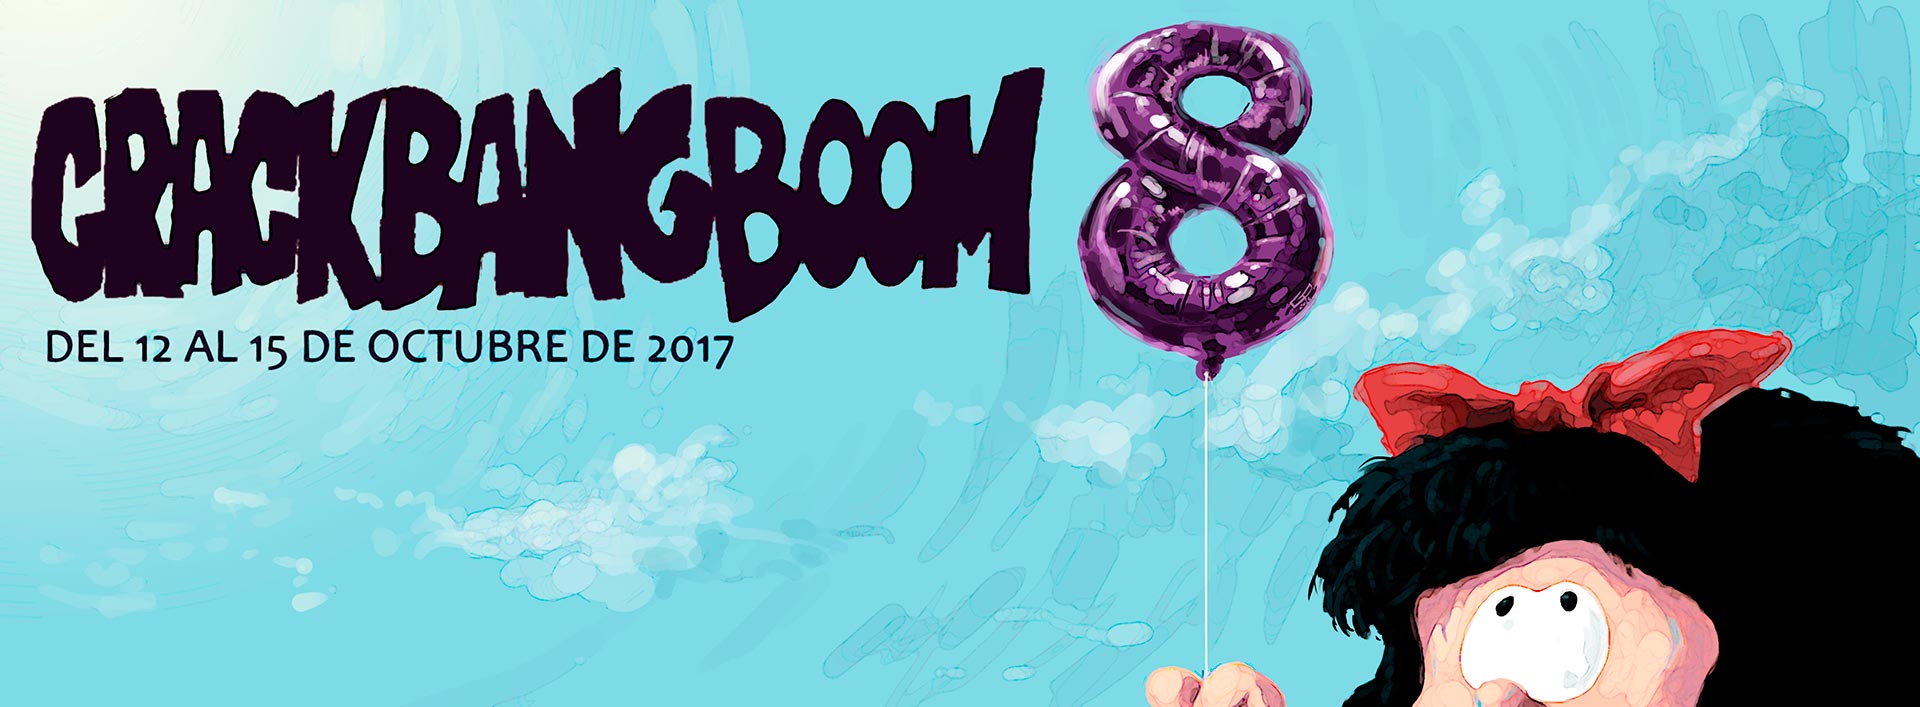 Crack Bang Boom 8 | Del 12 al 15 de Octubre de 2017